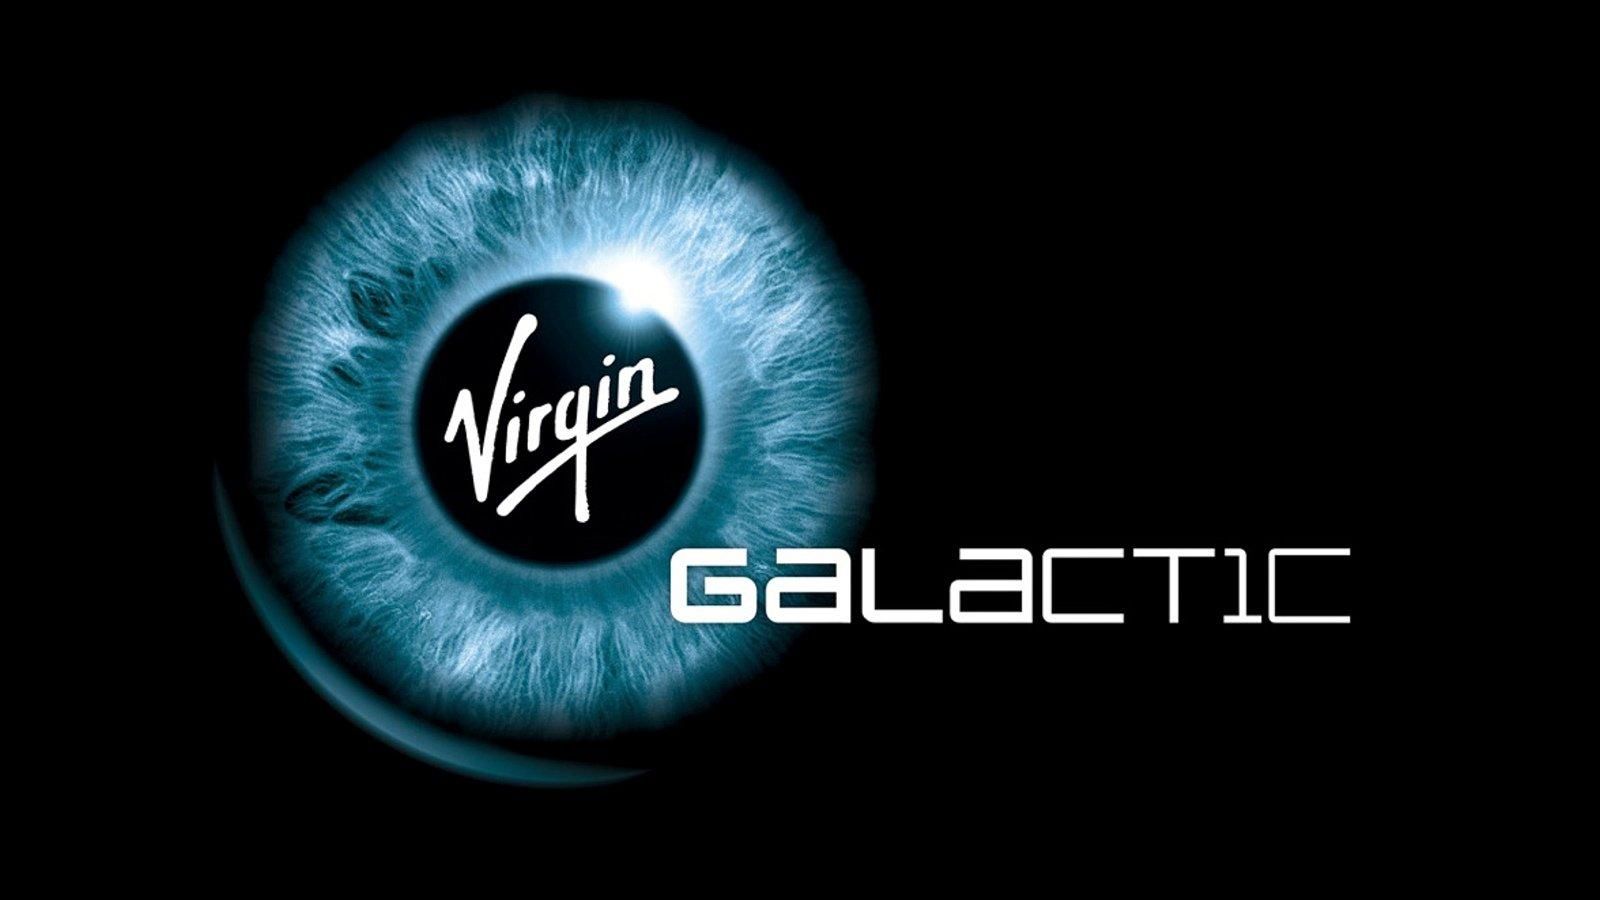 Для космического туризма: Virgin Galactic презентовала космопорт